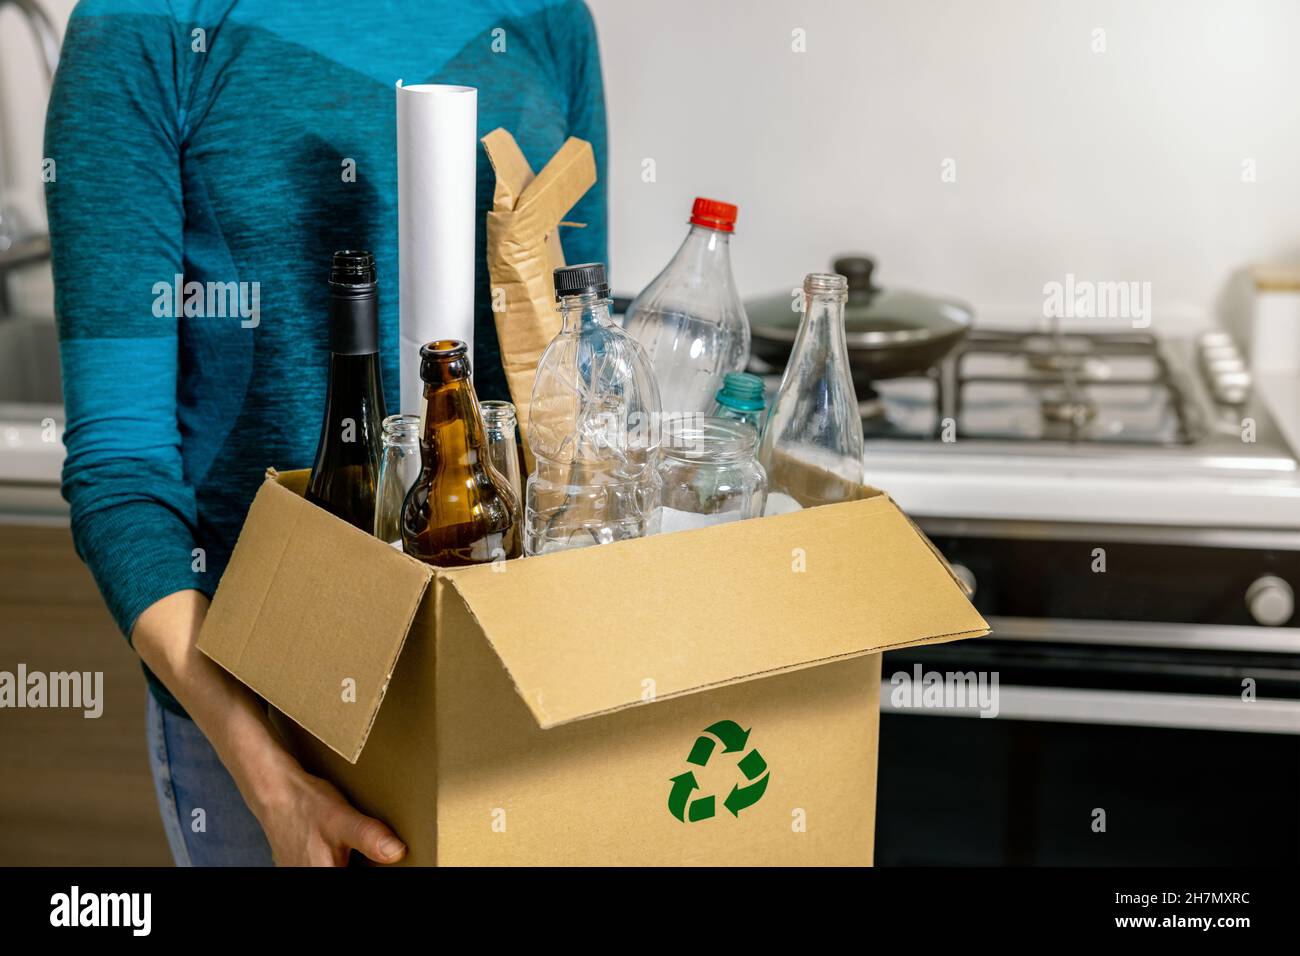 Sortierung und Recycling von Haushaltsabfällen - Frau hält einen Karton mit Plastik-, Glas- und Papiermüll Stockfoto